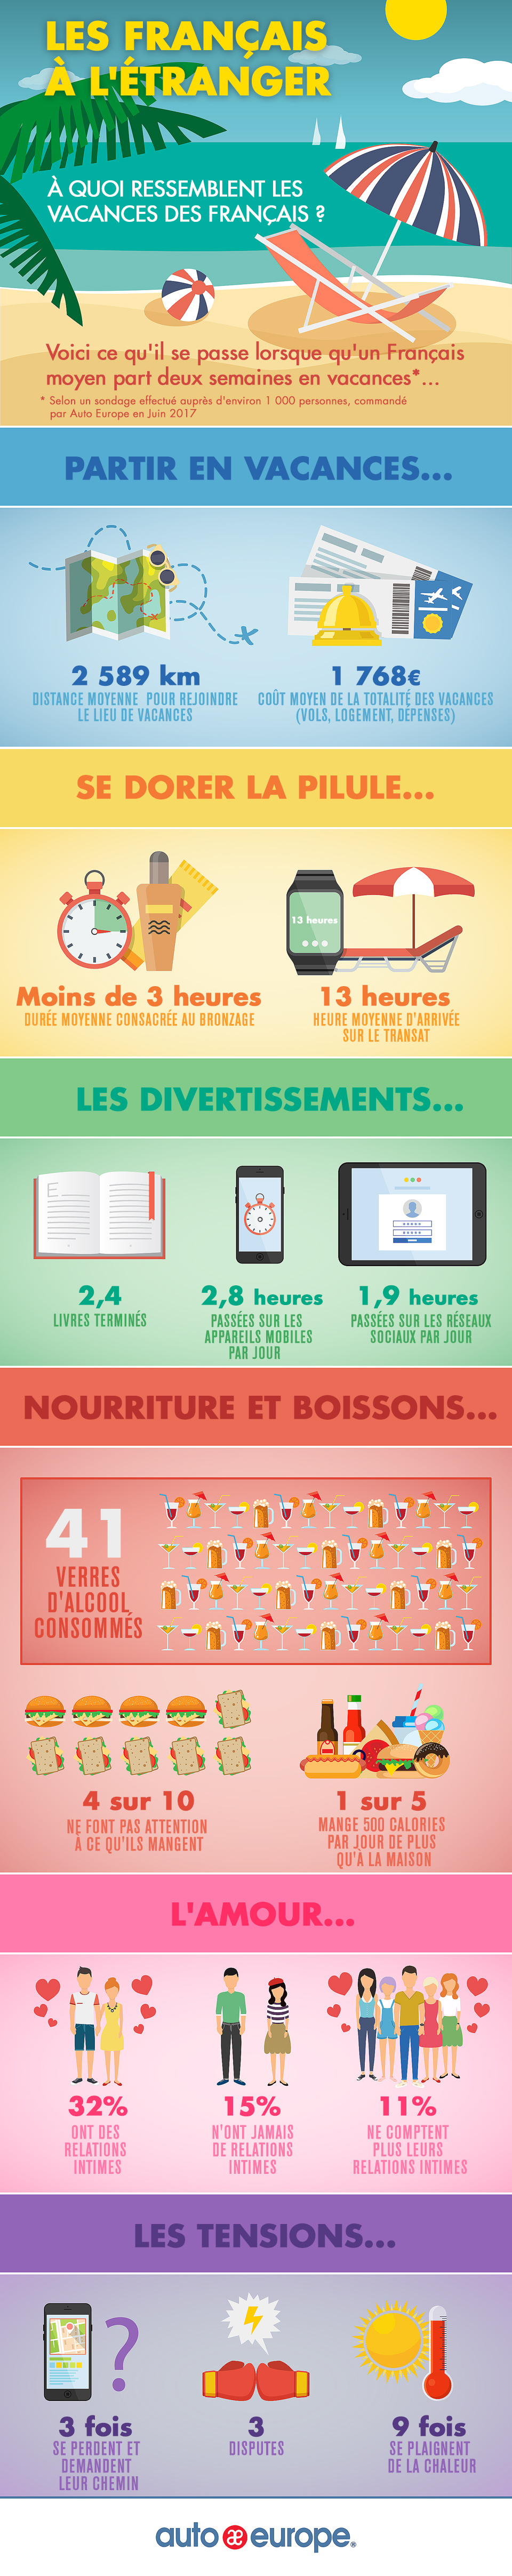 Infographie : les français à l'étranger